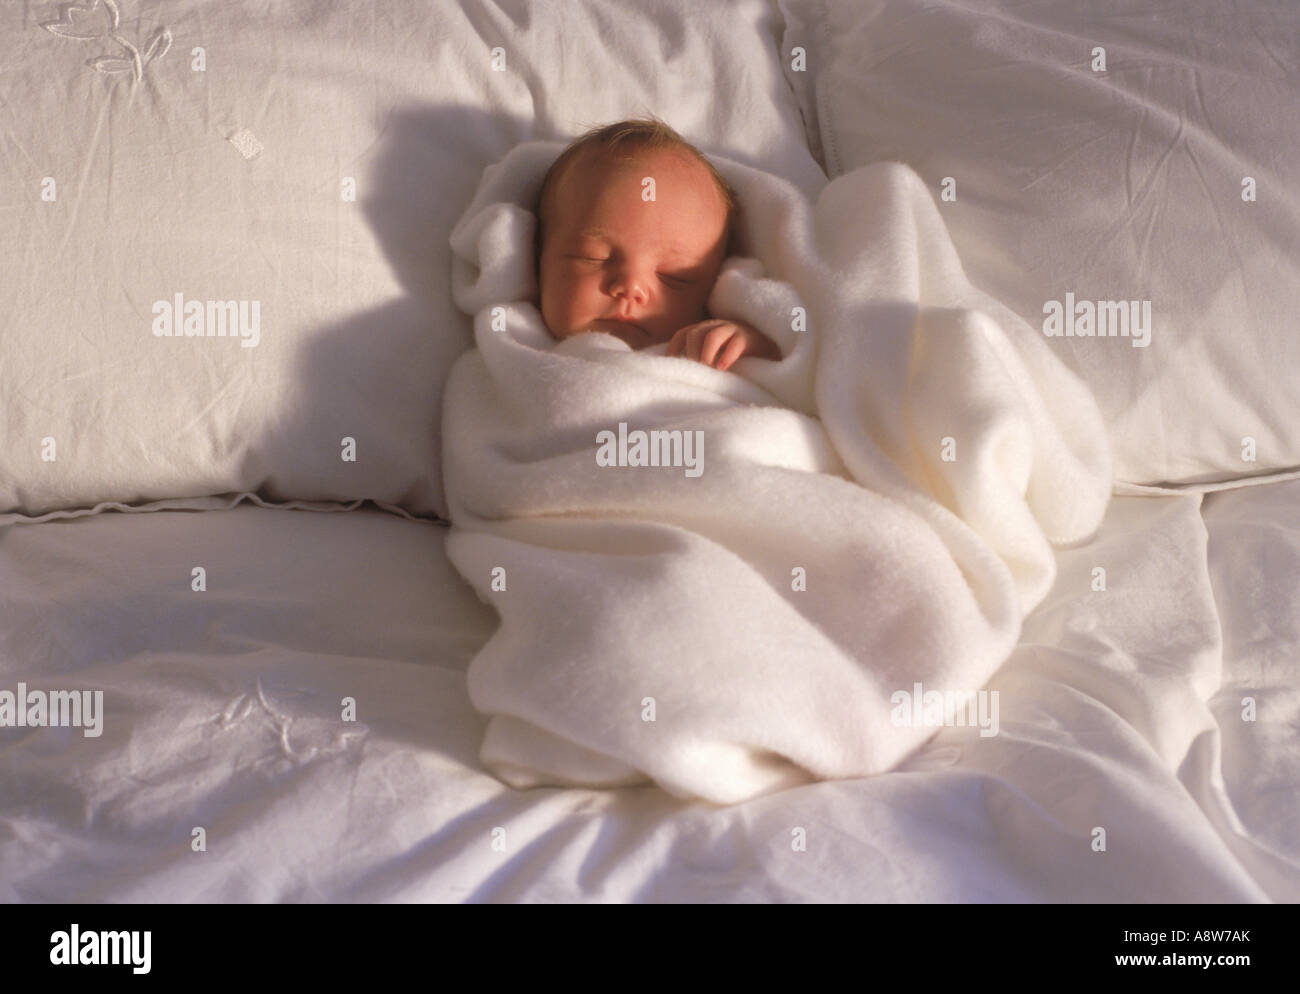 Bébé de 2 à 3 semaines sur un lit enveloppé dans une couverture blanche dans la lumière du matin Banque D'Images